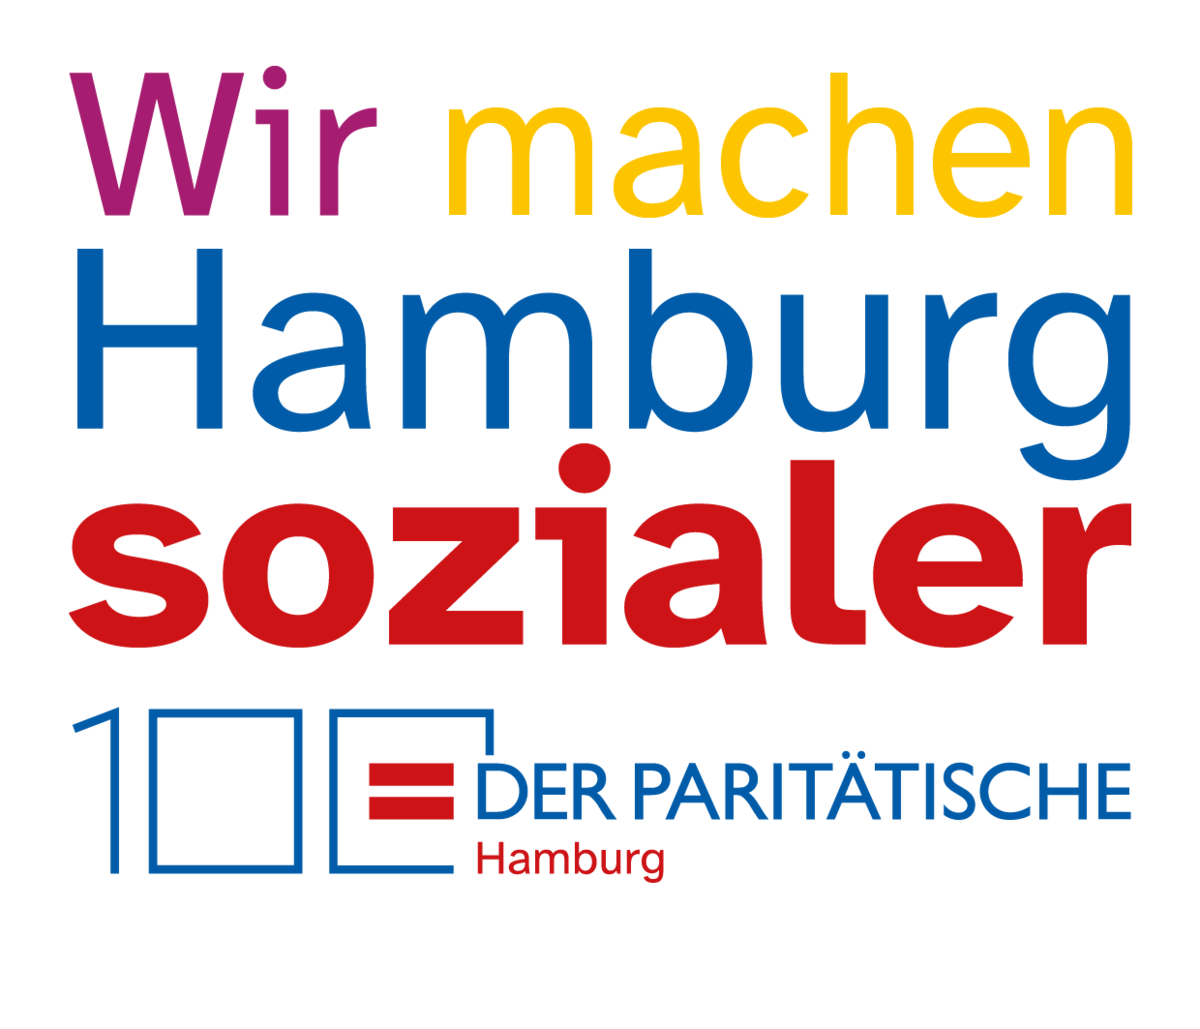 Text in vielen unterschiedlichen großen, bunten Buchstaben: Wir machen Hamburg sozialer. 100 Jahre Der Paritätische Hamburg.